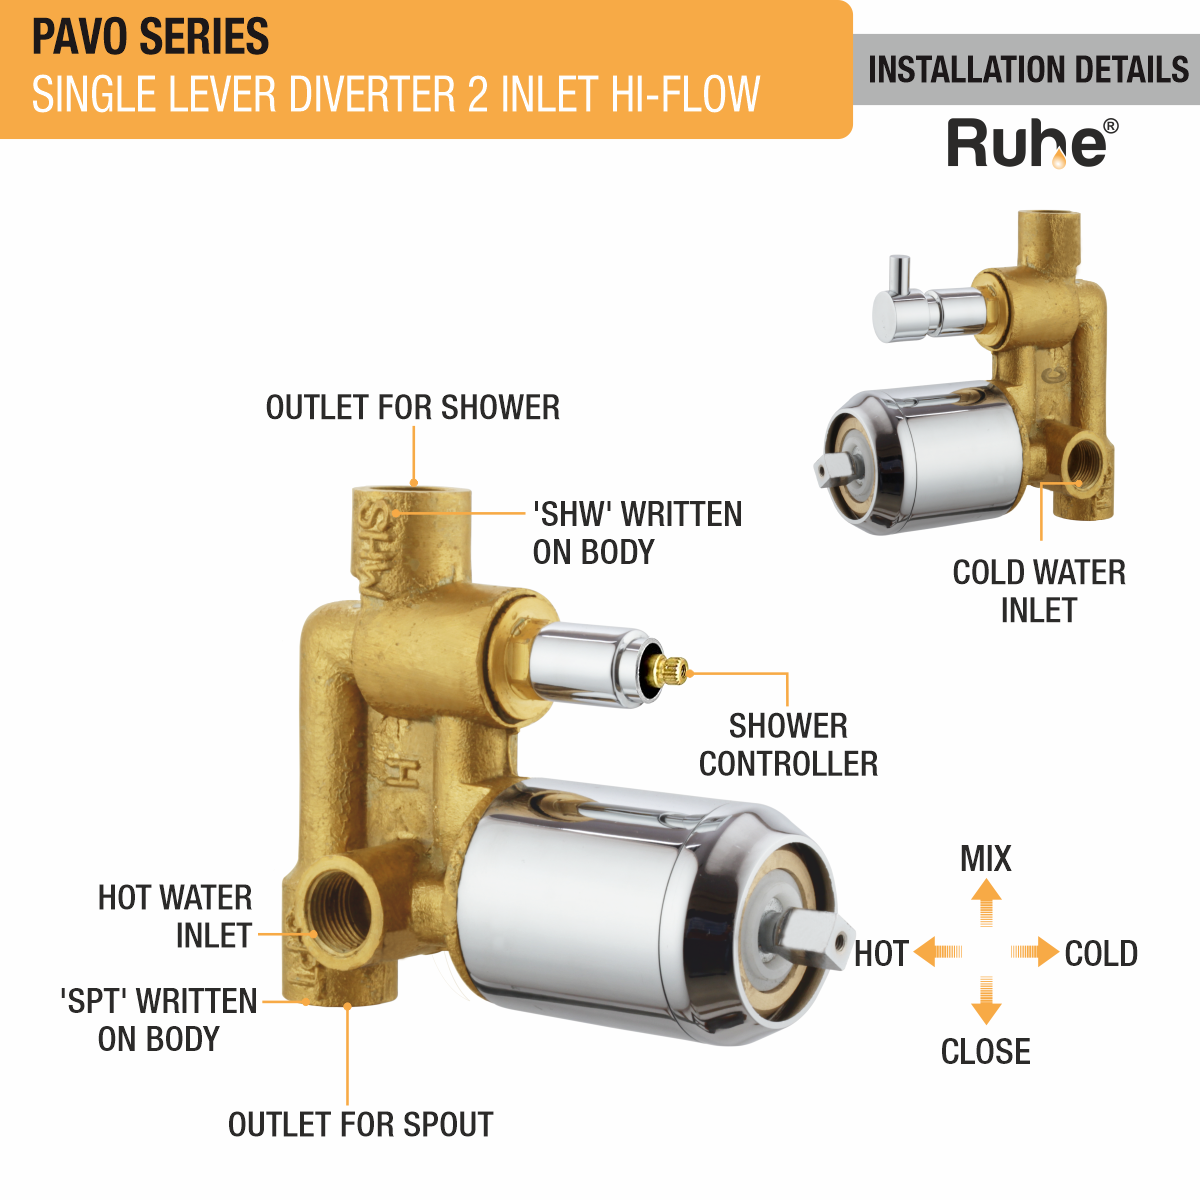 Pavo Single Lever 2-inlet Hi-Flow Diverter (Complete Set) installation details